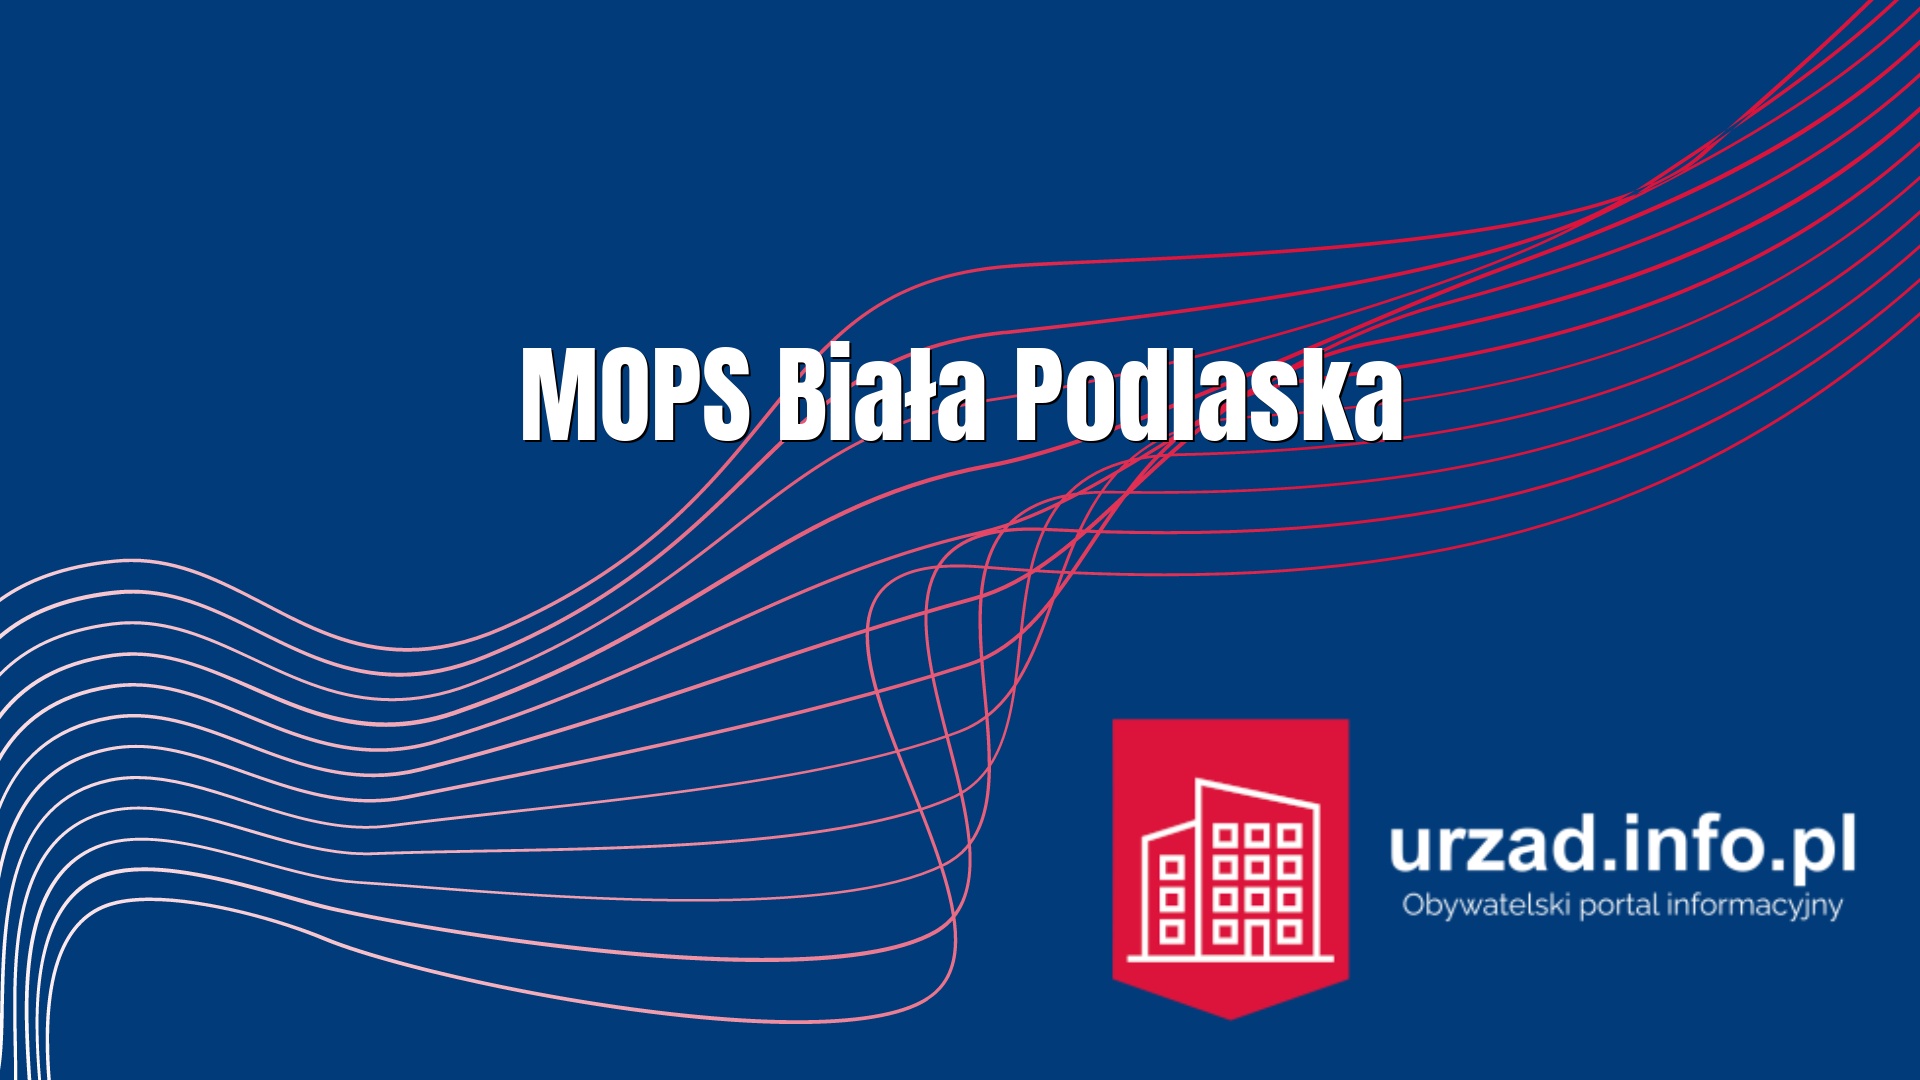 MOPS Biała Podlaska – Miejski Ośrodek Pomocy Społecznej w Białej Podlaskiej